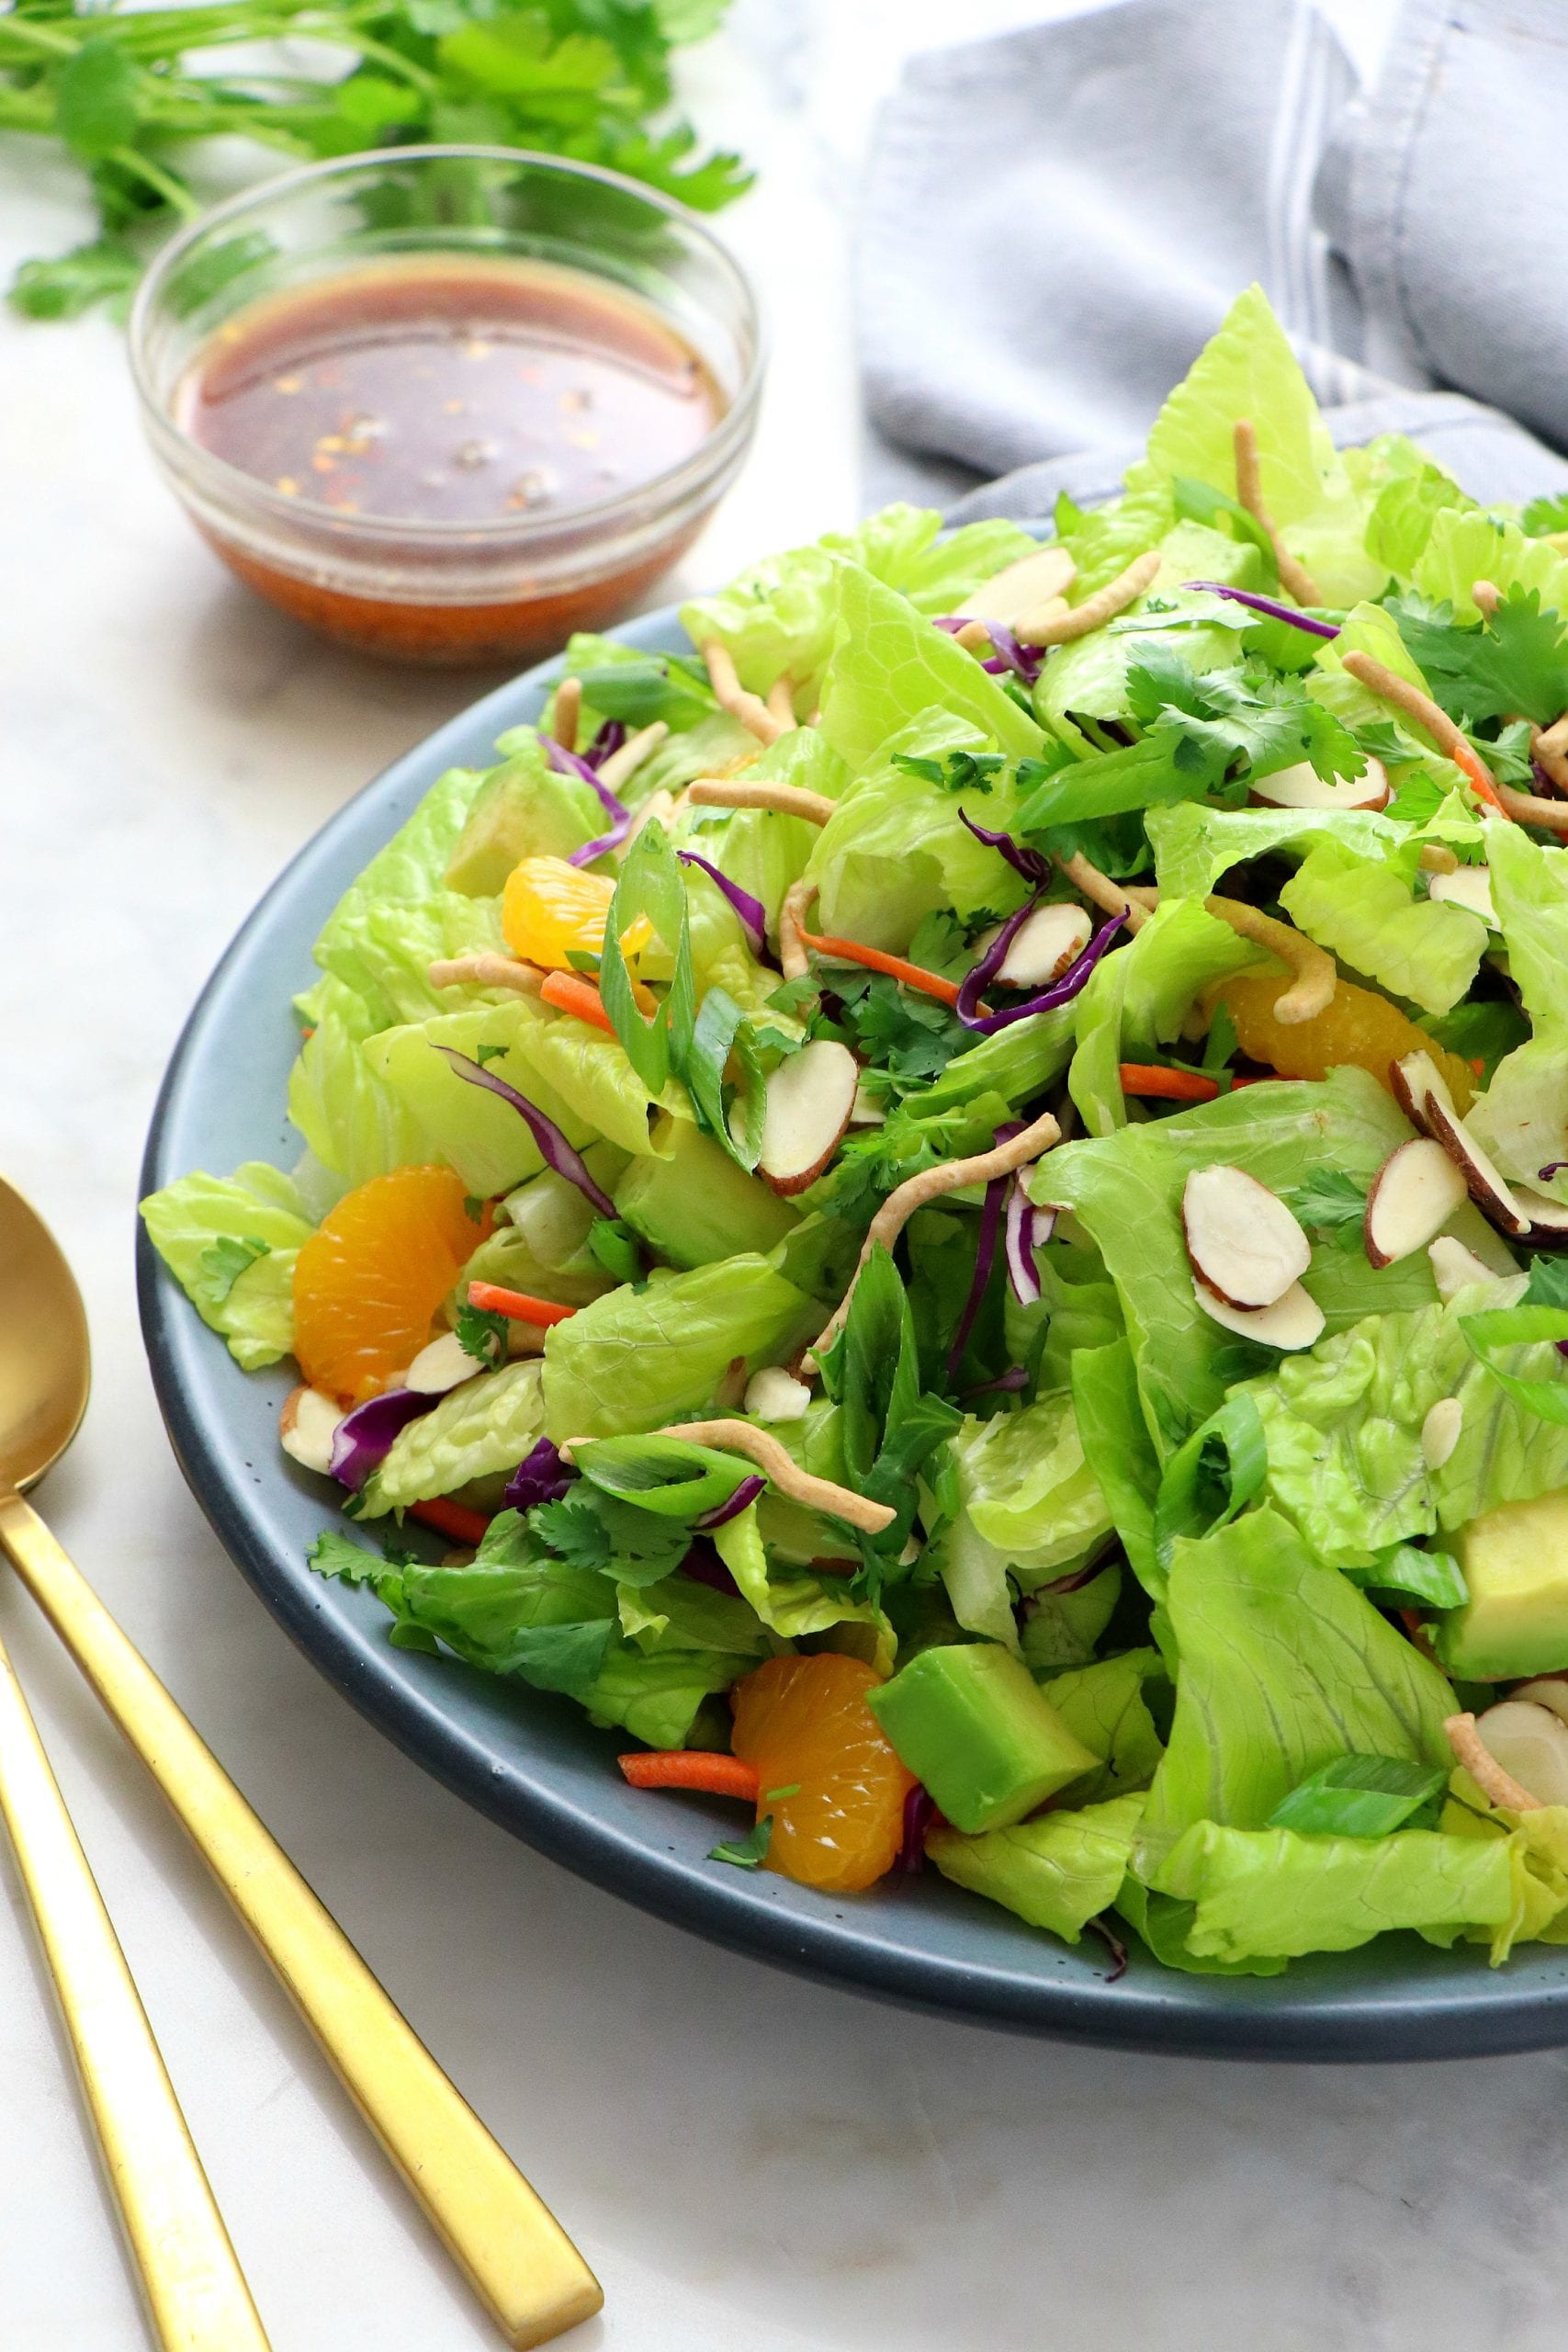 Vegan Crunchy Asian Salad